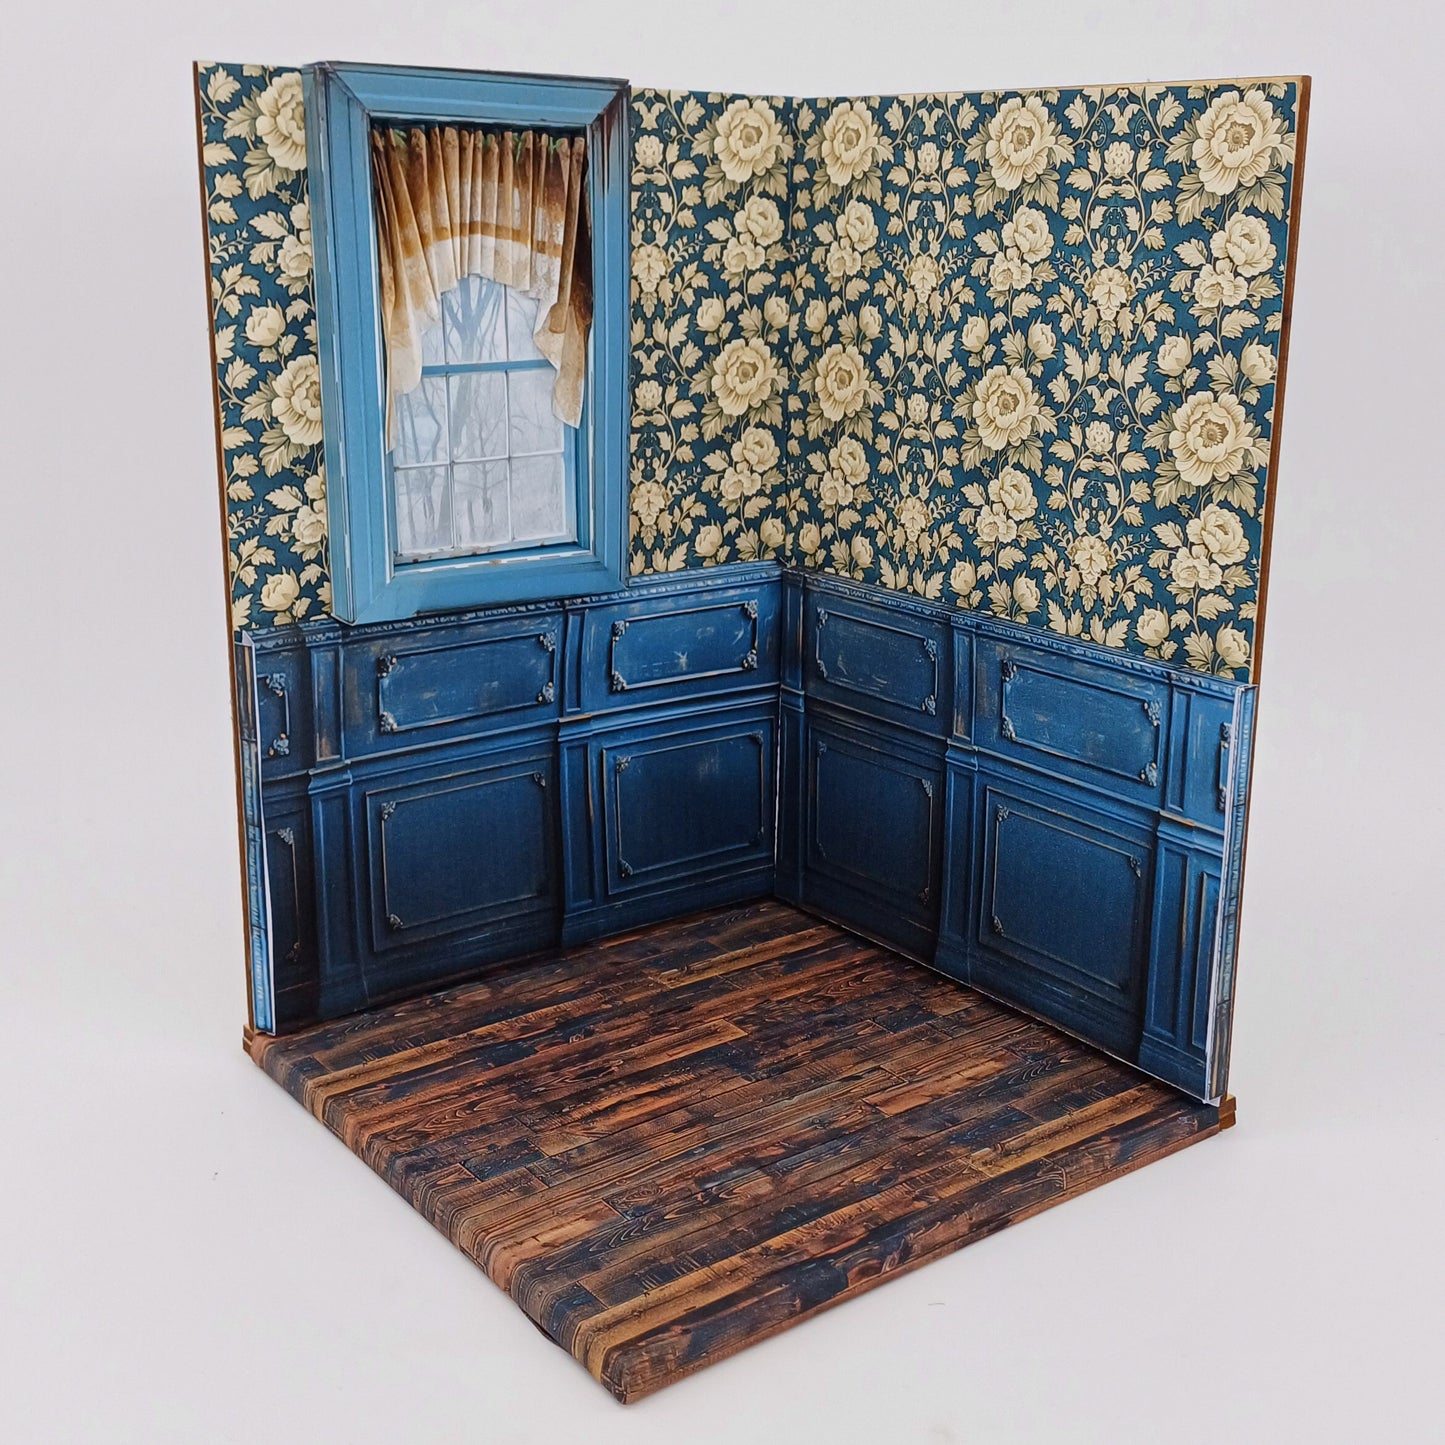 Diseño Roombox "Blue Room" escala 1:12 para impresión y artesanía